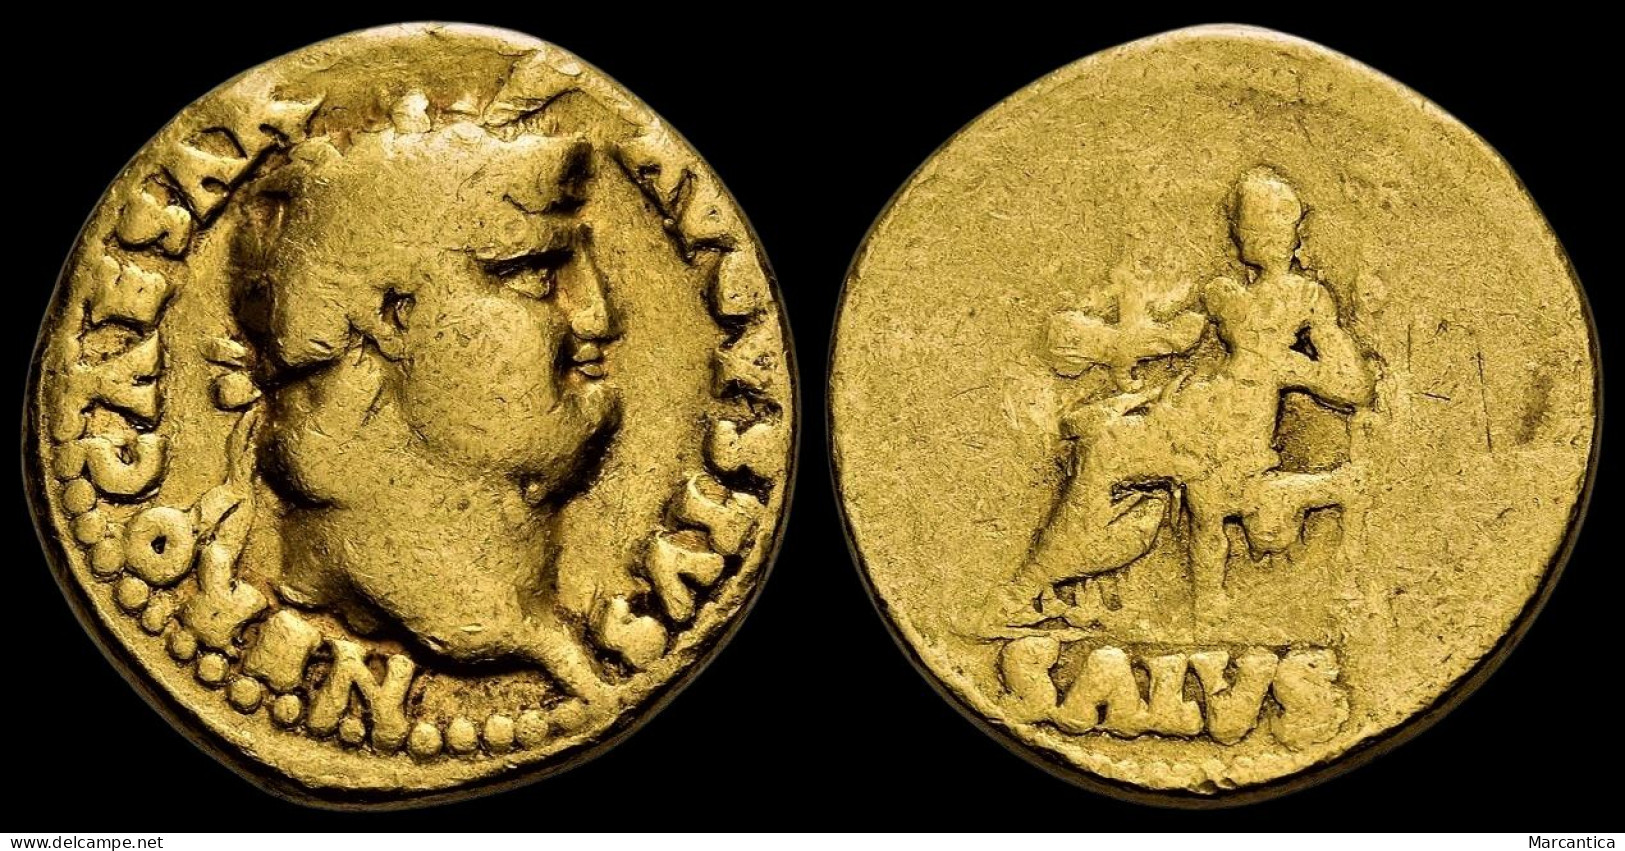 NERO. AD 54-68. AV Aureus. Rome Mint. Circa AD 66-67. - The Julio-Claudians (27 BC To 69 AD)